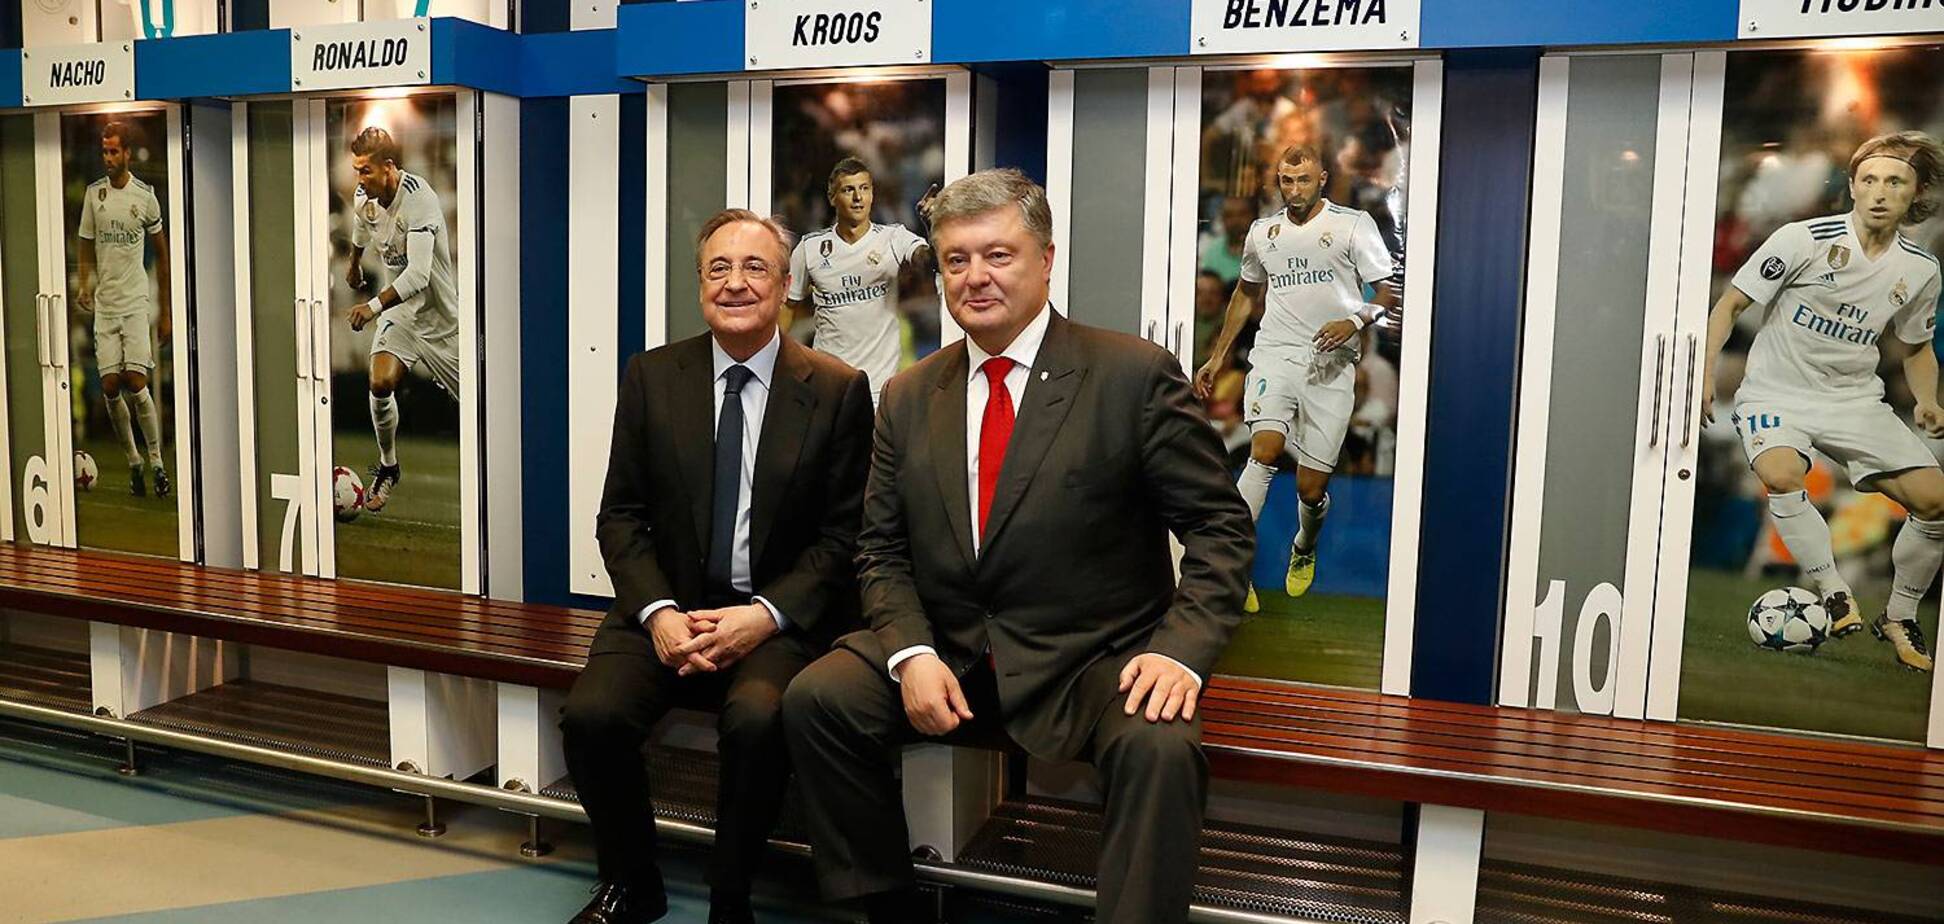 'Poroshenko 1': 'Реал' відзначив президента України - фотофакт